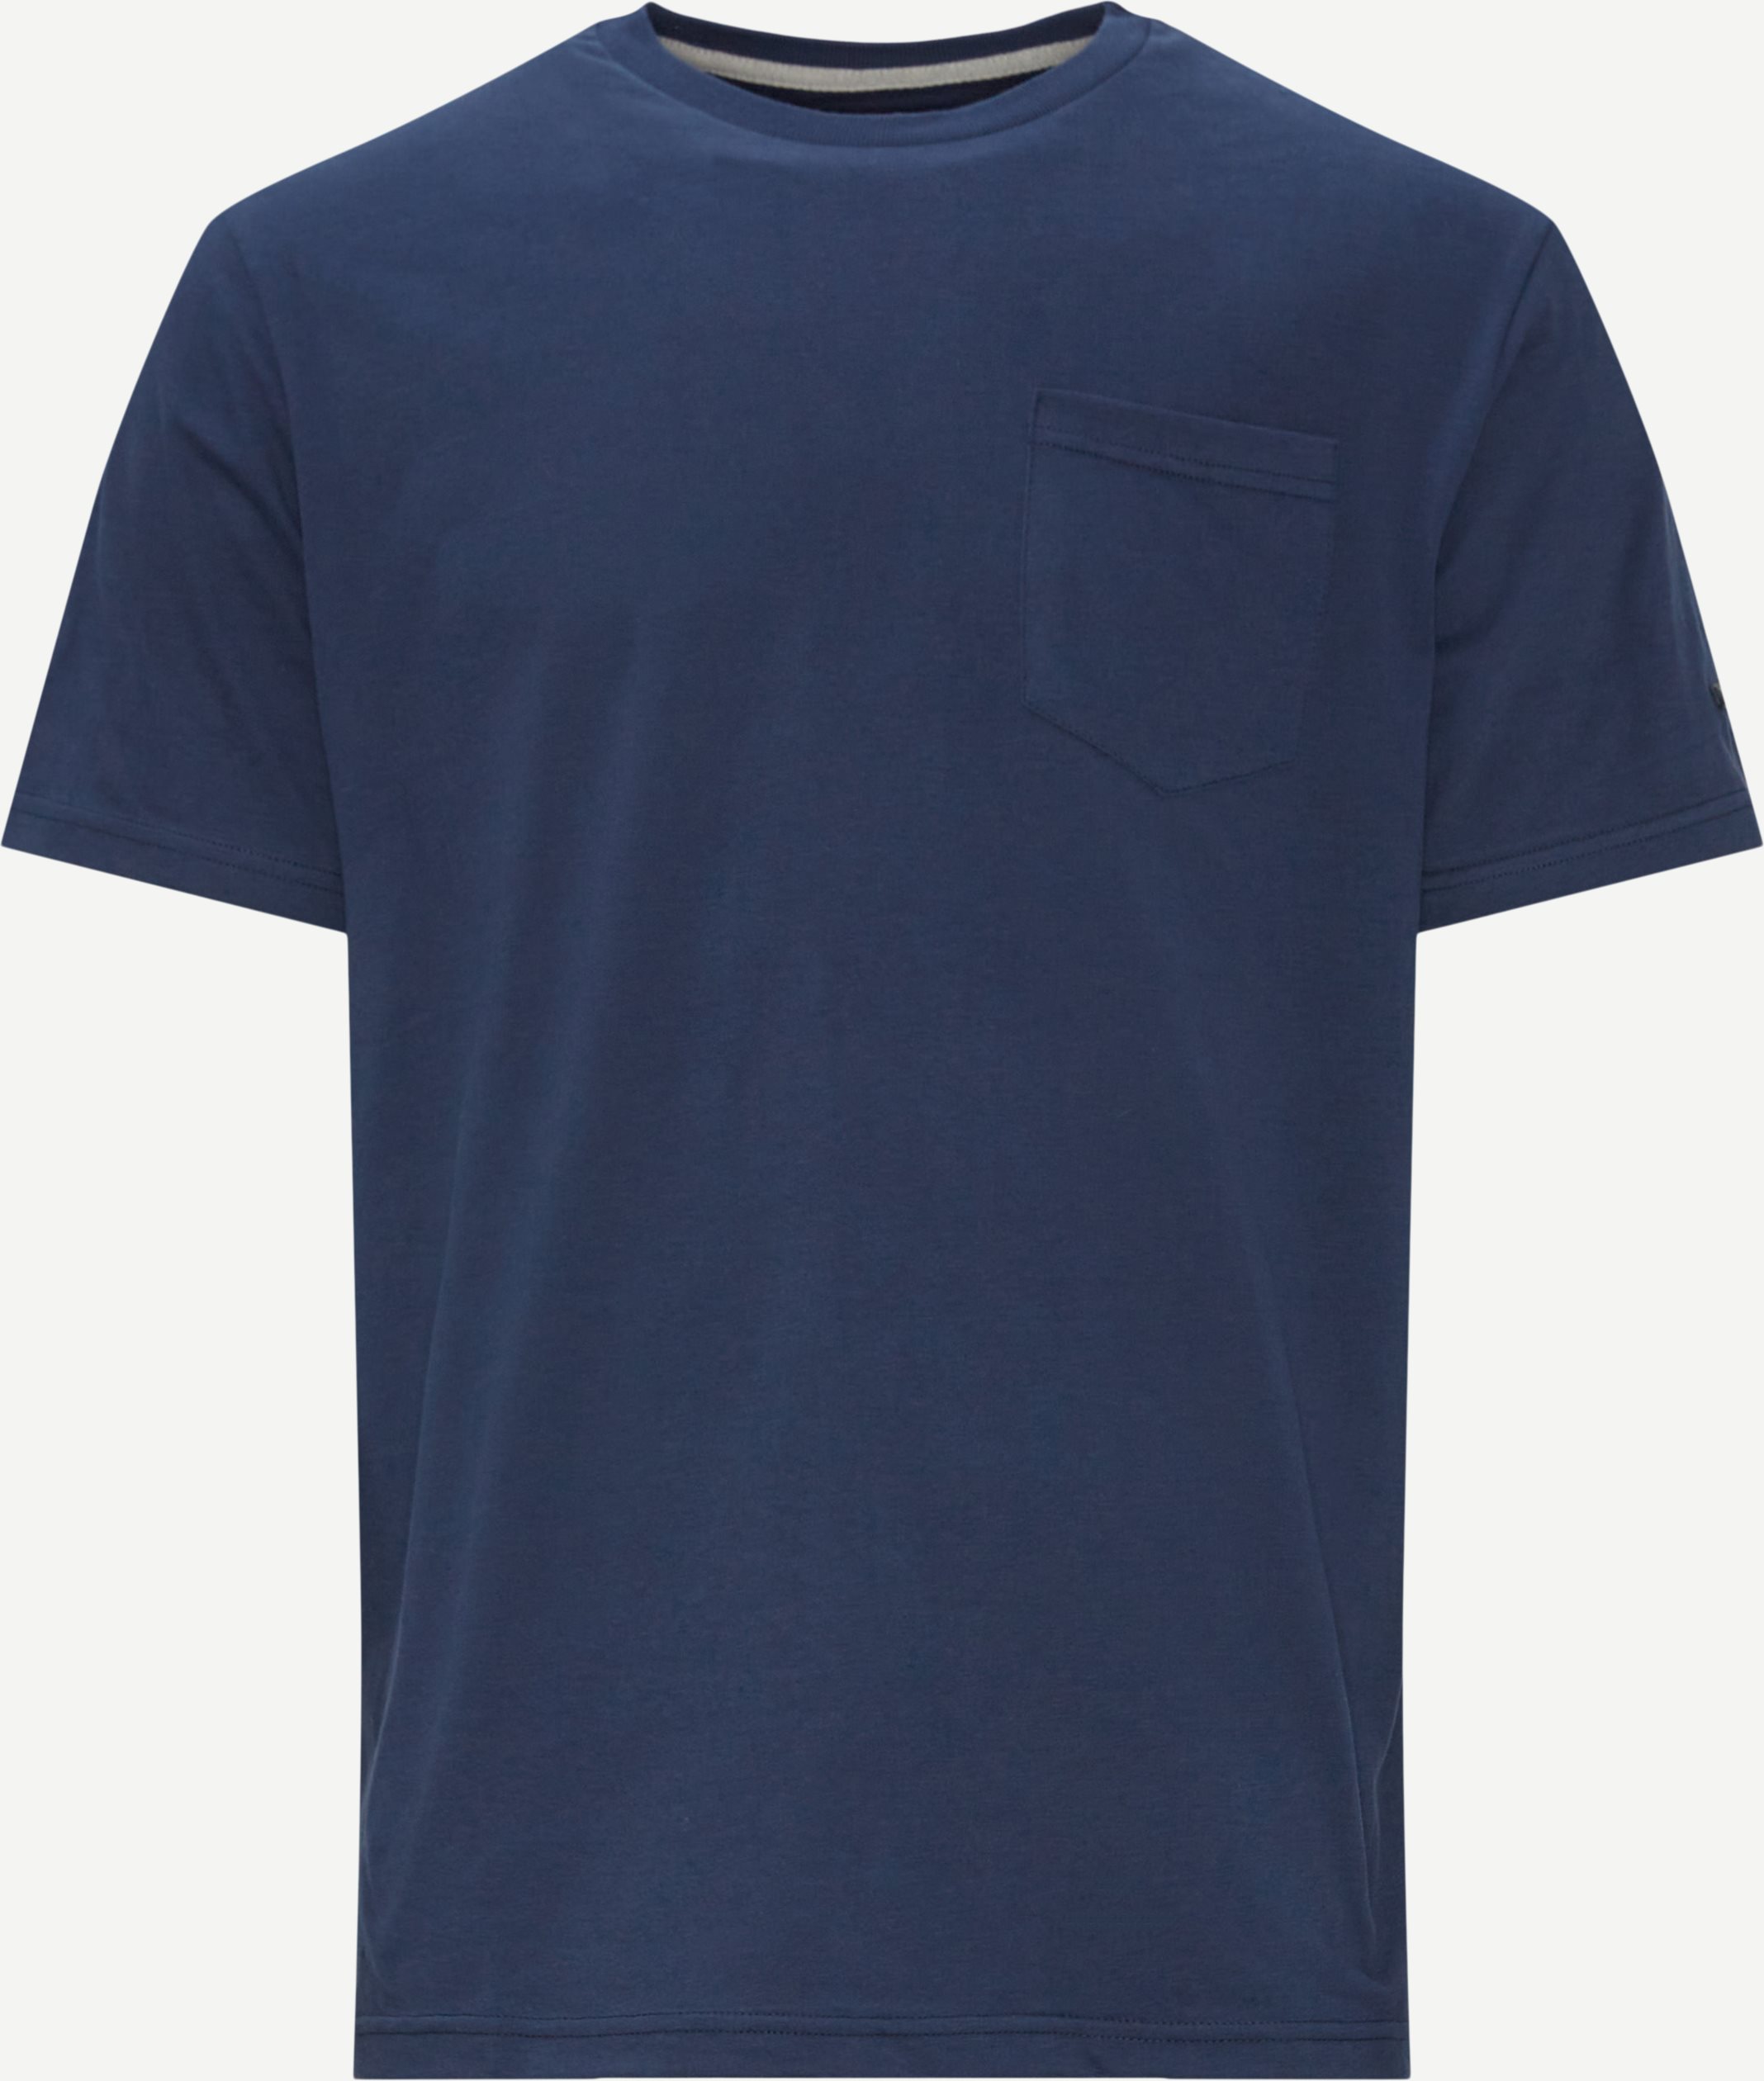 Zeus T-shirt - T-shirts - Regular fit - Blå